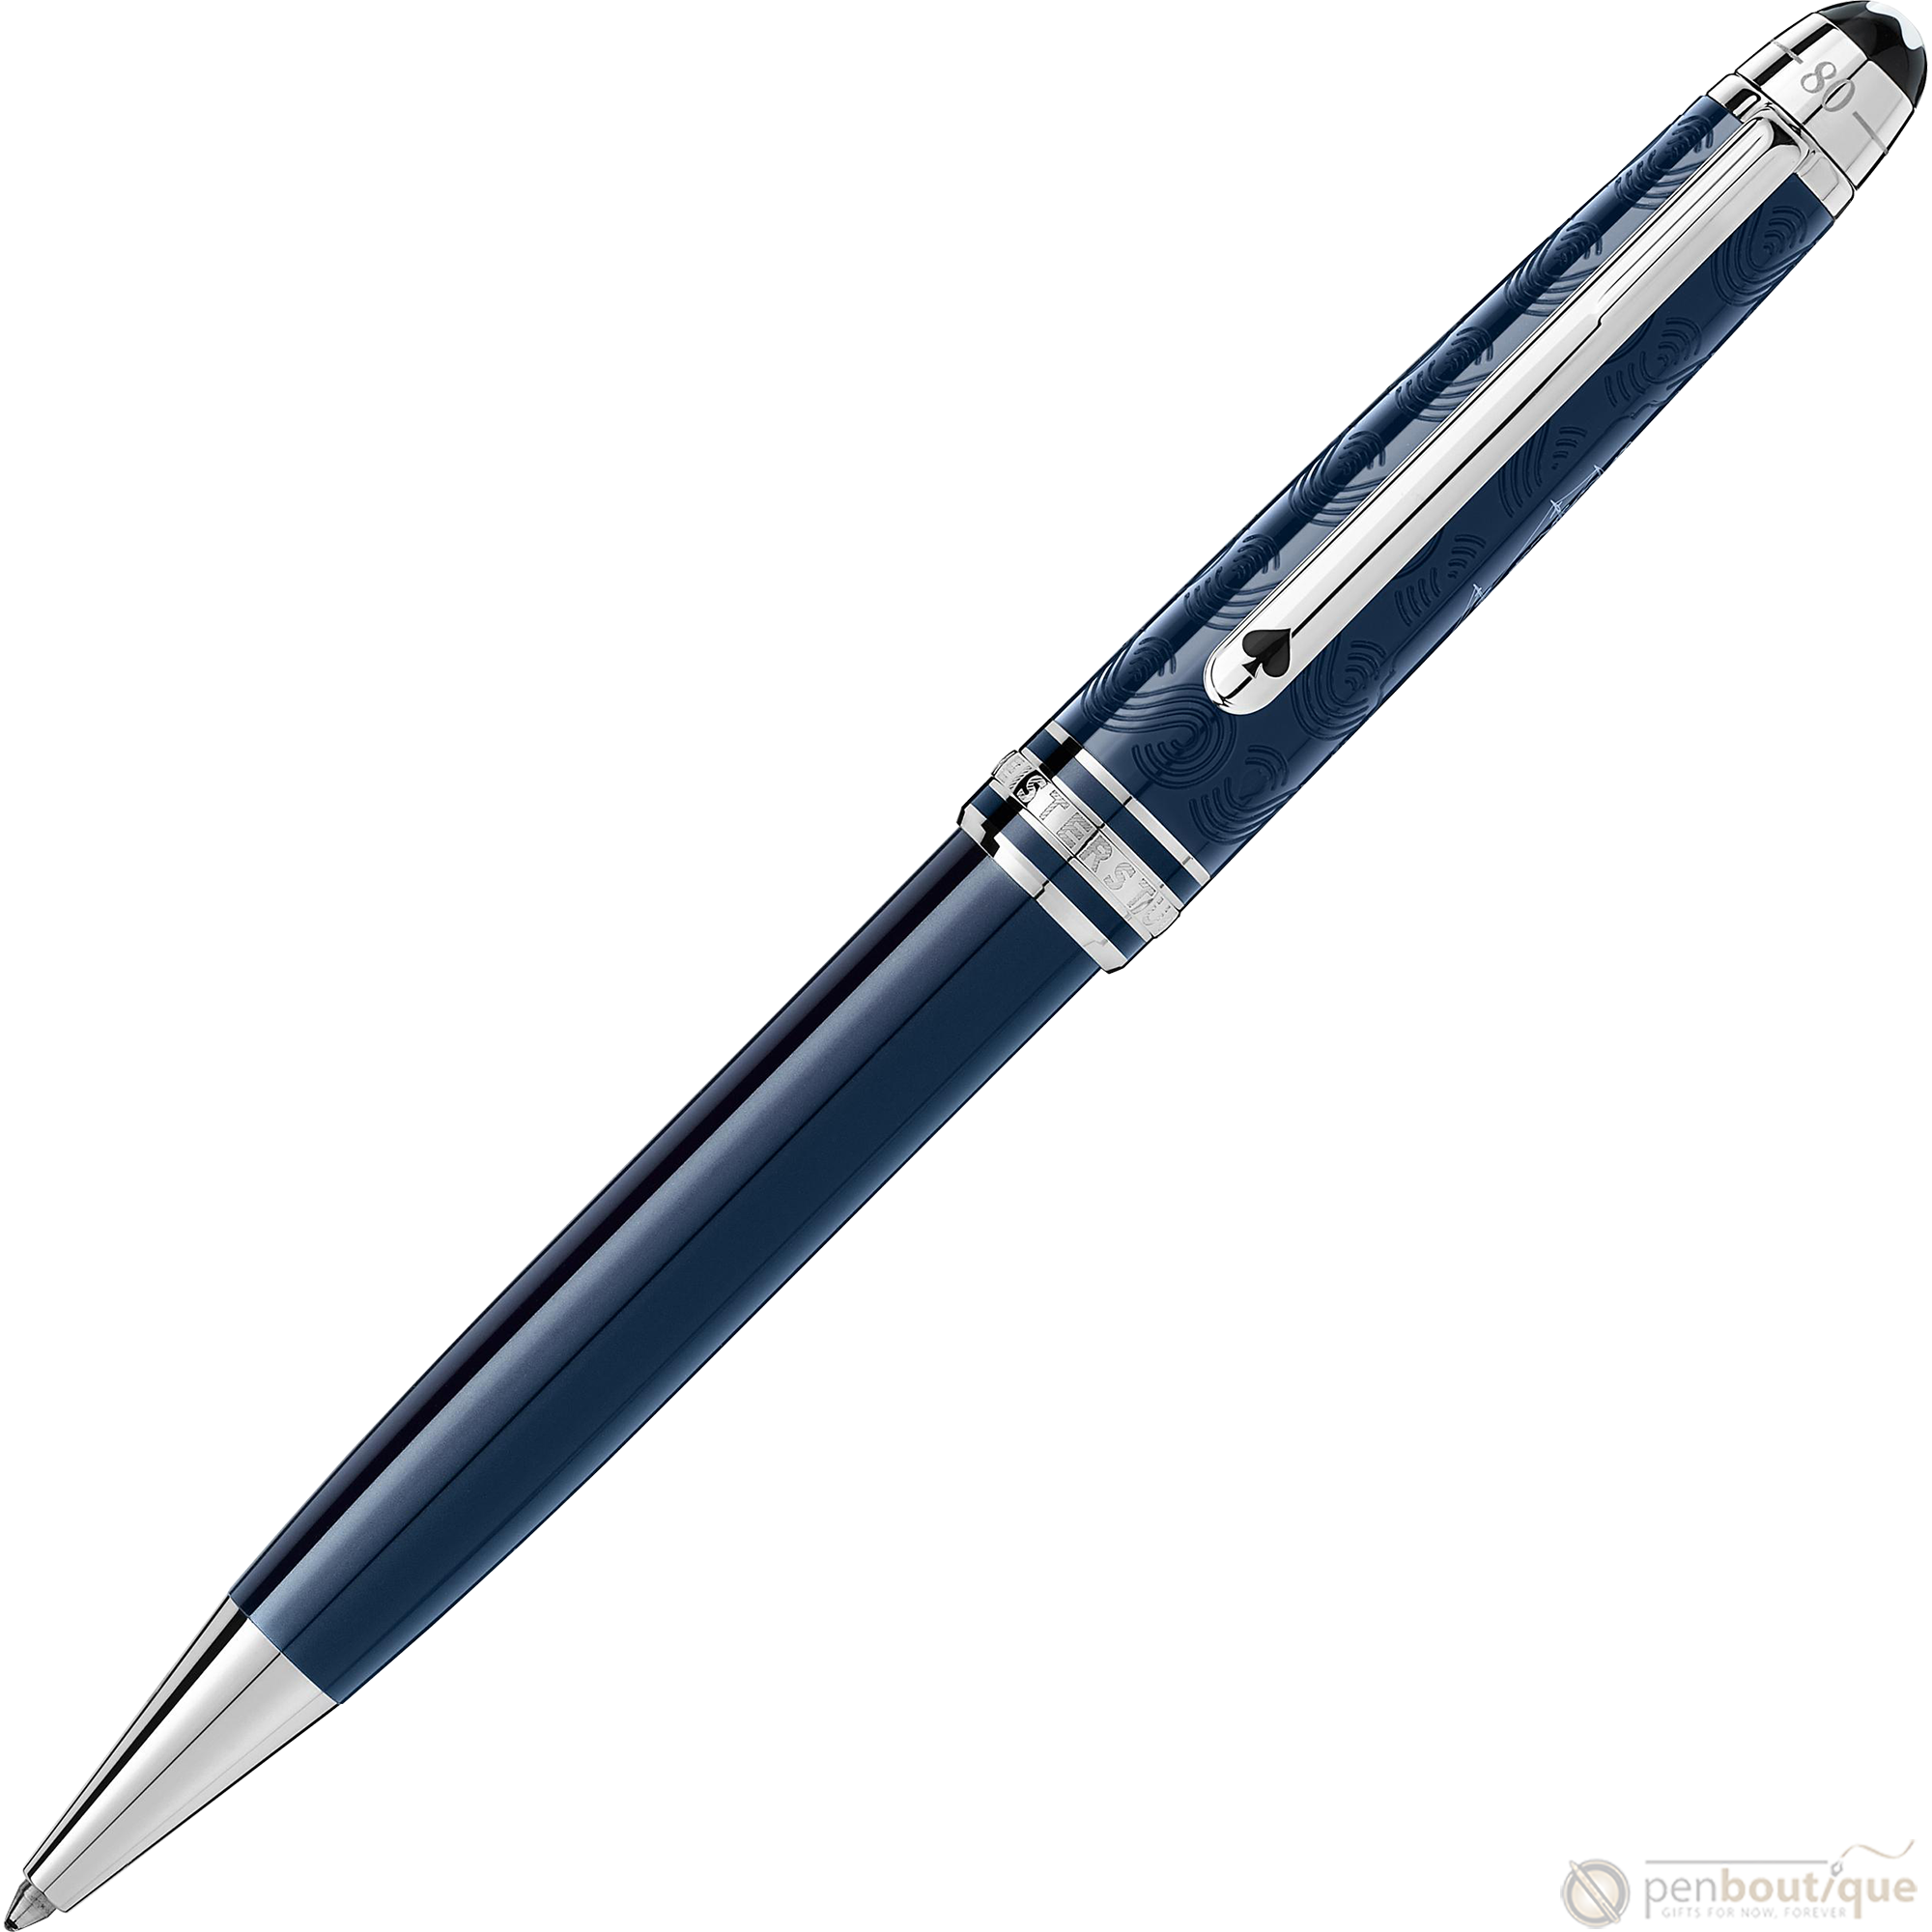 Montblanc 164 Meisterstuck Ballpoint Pen - Around The World In 80 Days (Classique)-Pen Boutique Ltd